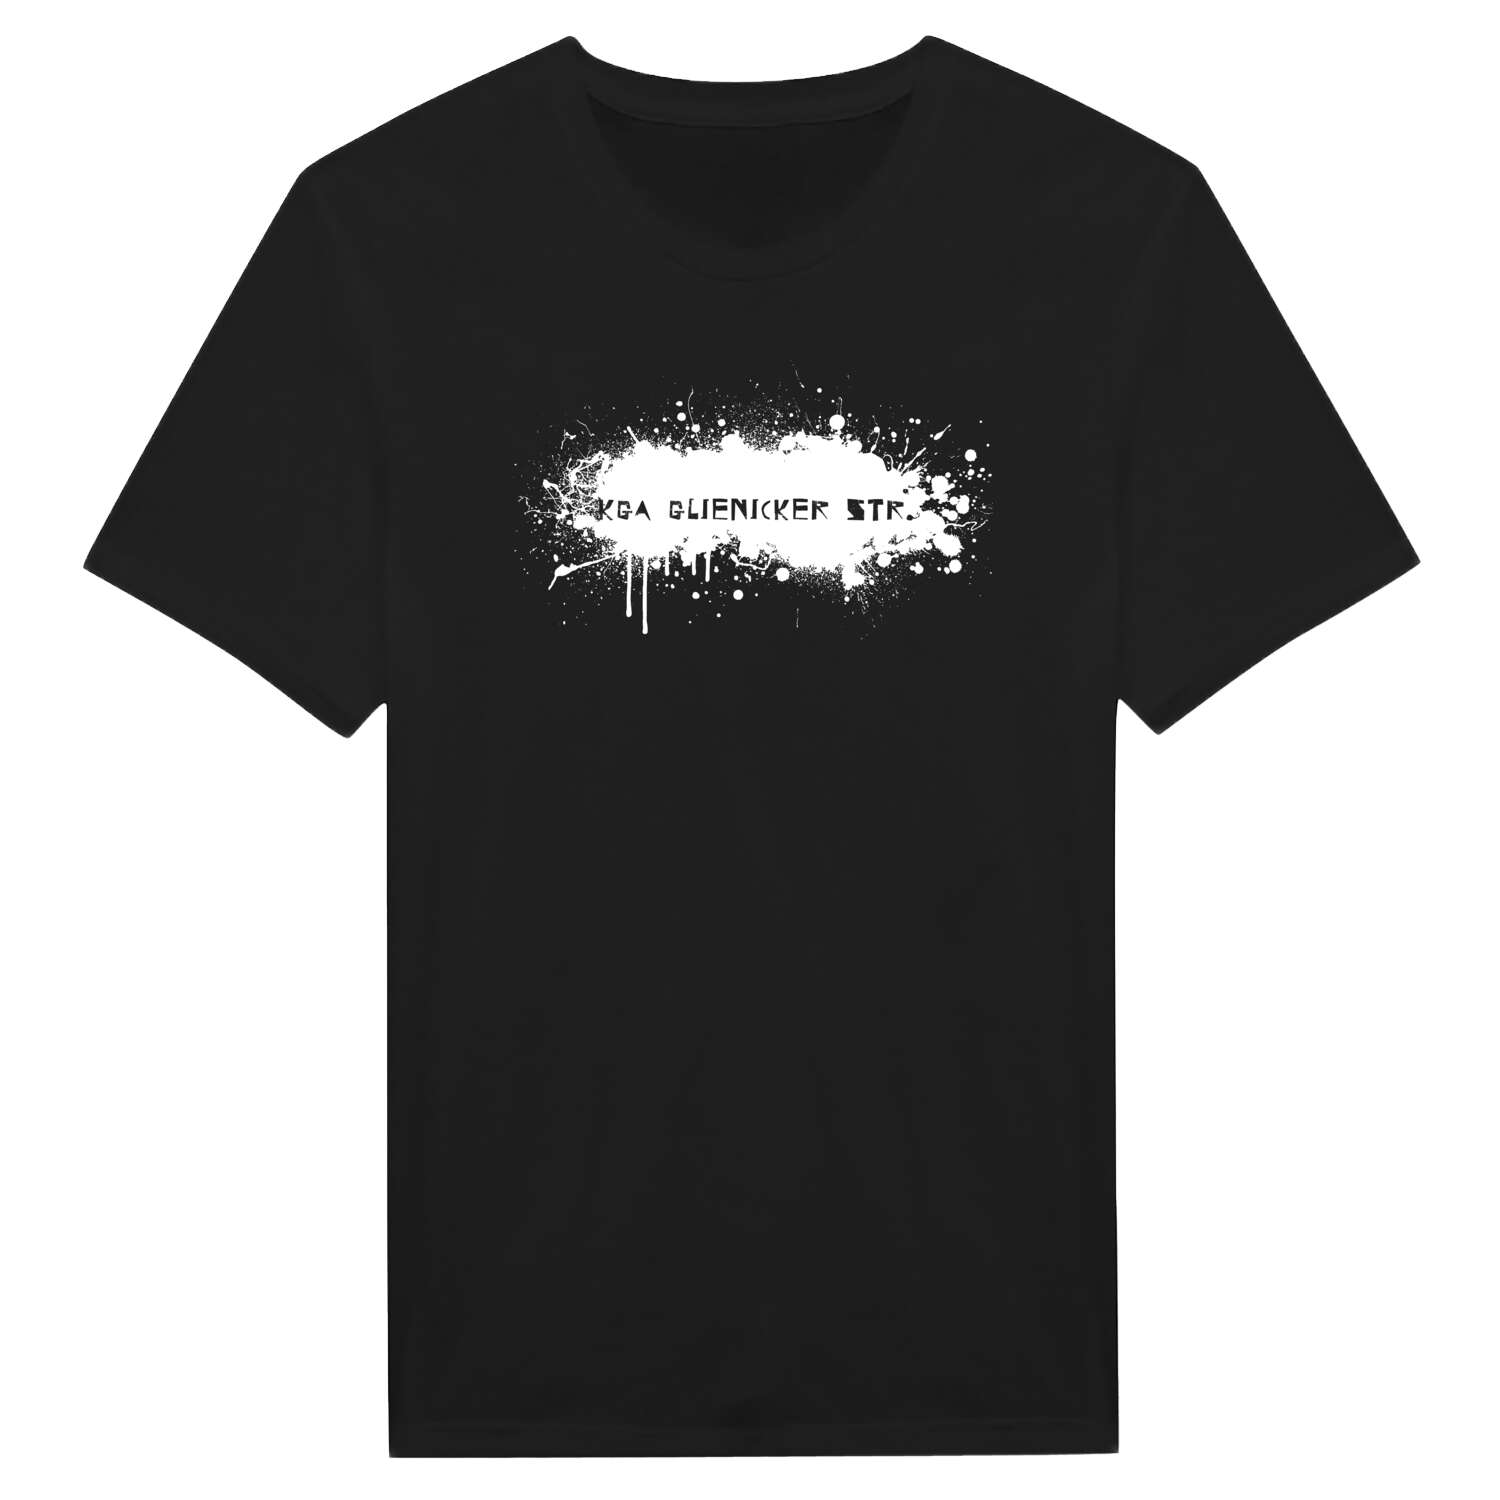 KGA Glienicker Str. T-Shirt »Paint Splash Punk«